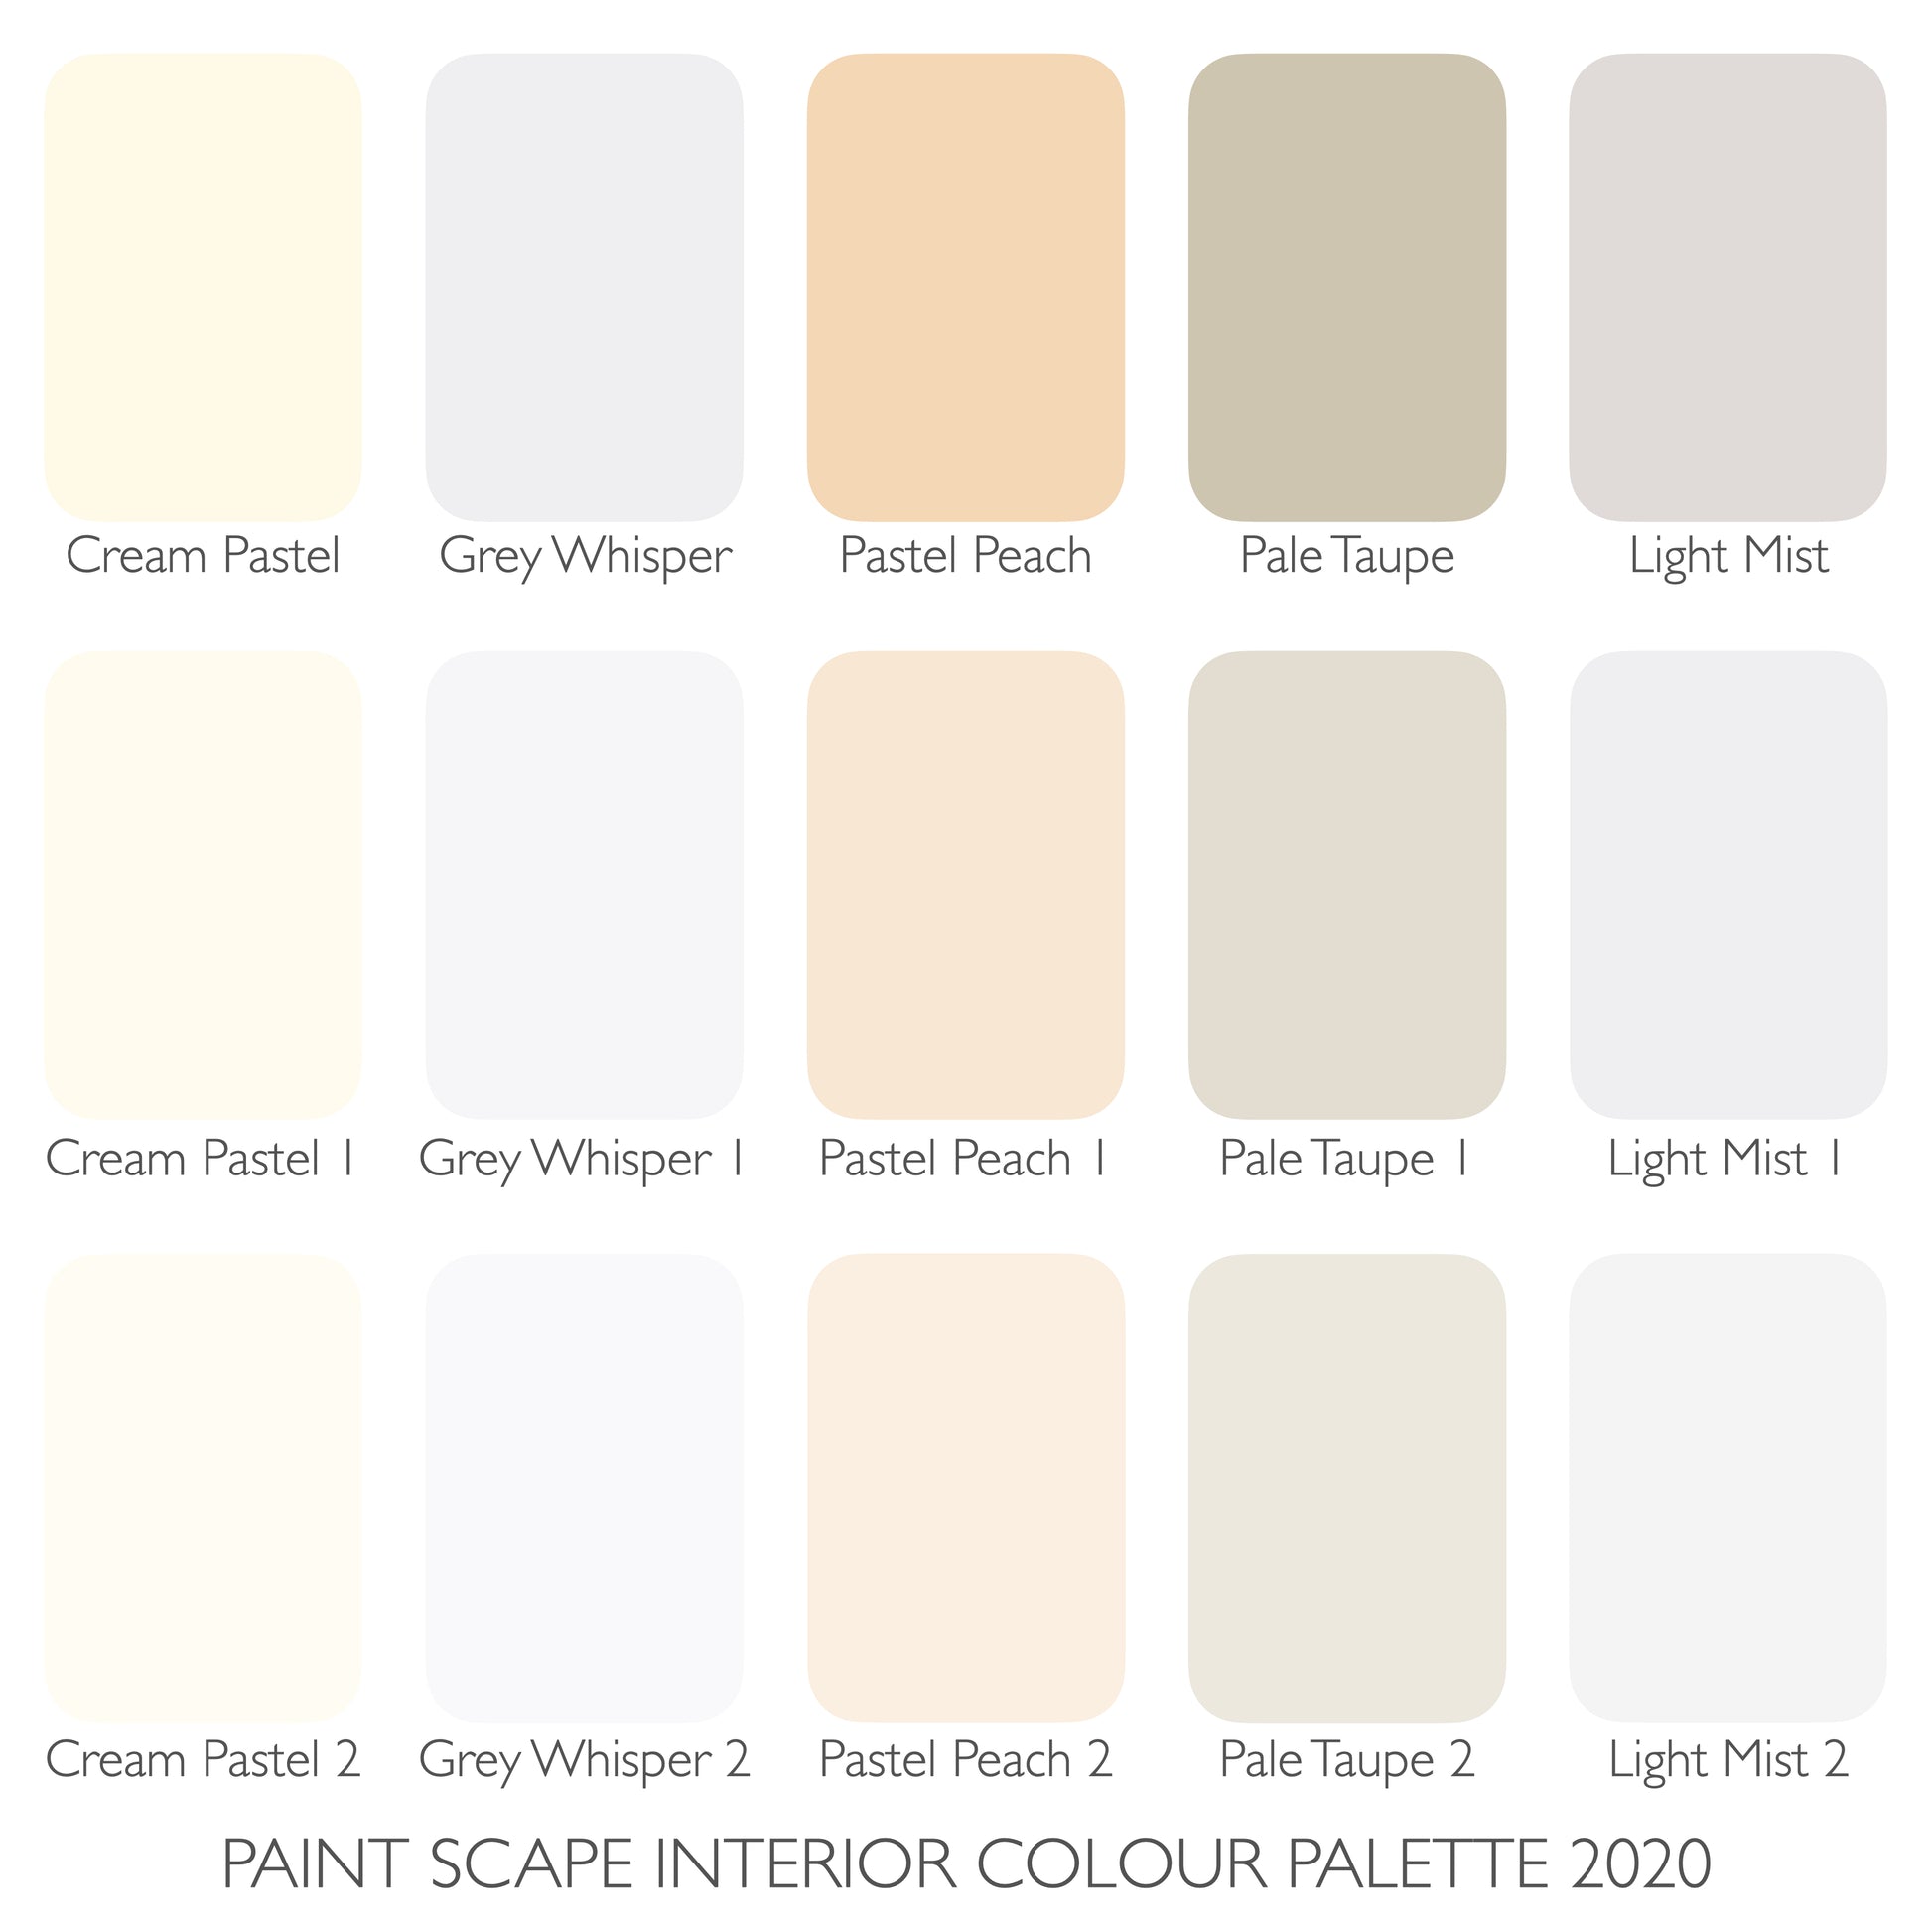 Paint Scape Paints - All Wall Interior Paint Colour Chart